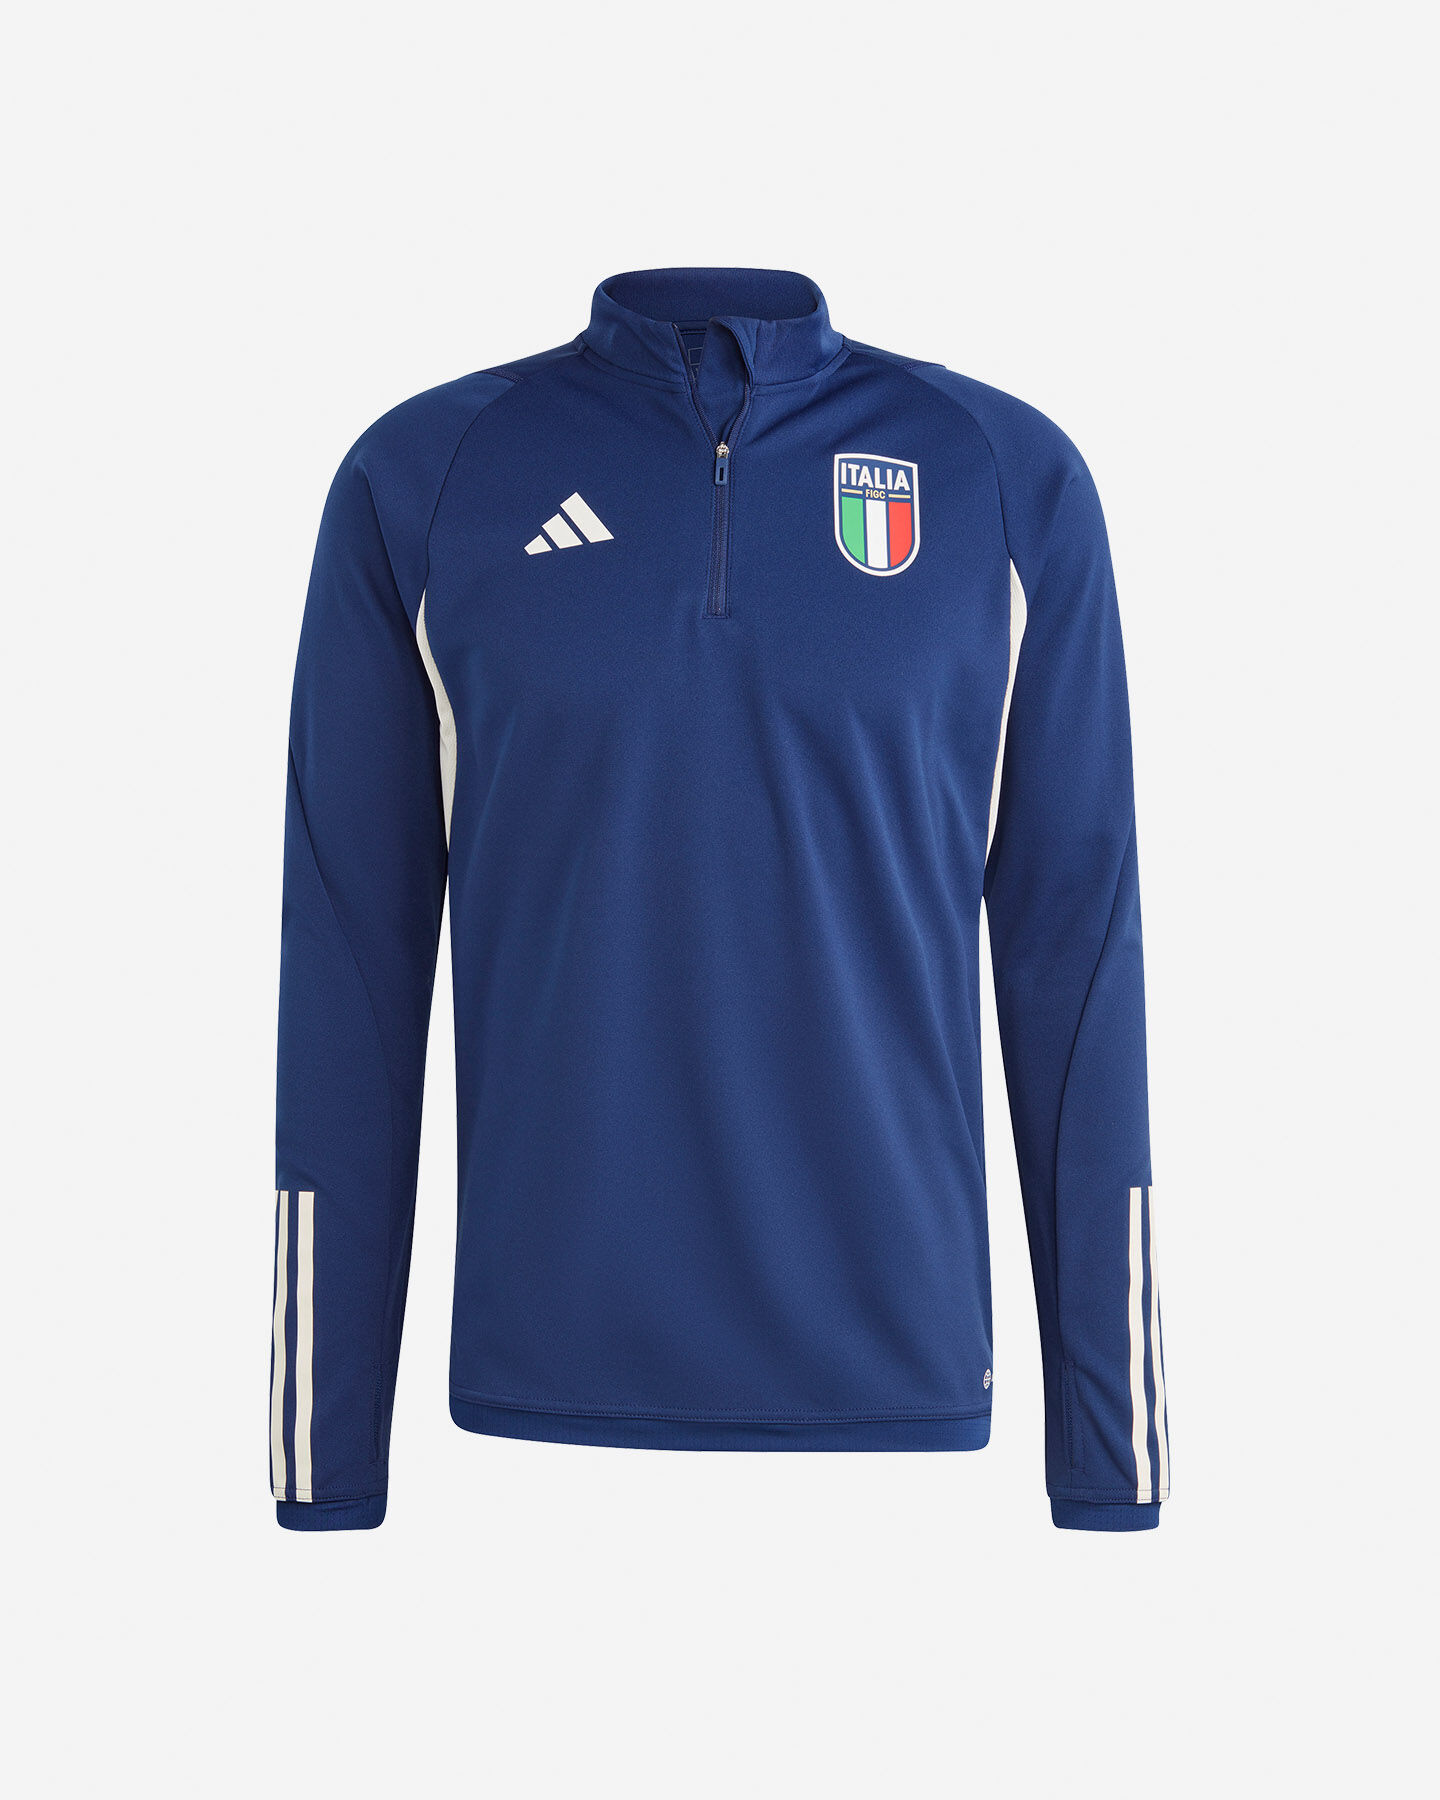  Abbigliamento calcio ADIDAS ITALIA TRAINING M S5542902|UNI|S scatto 0